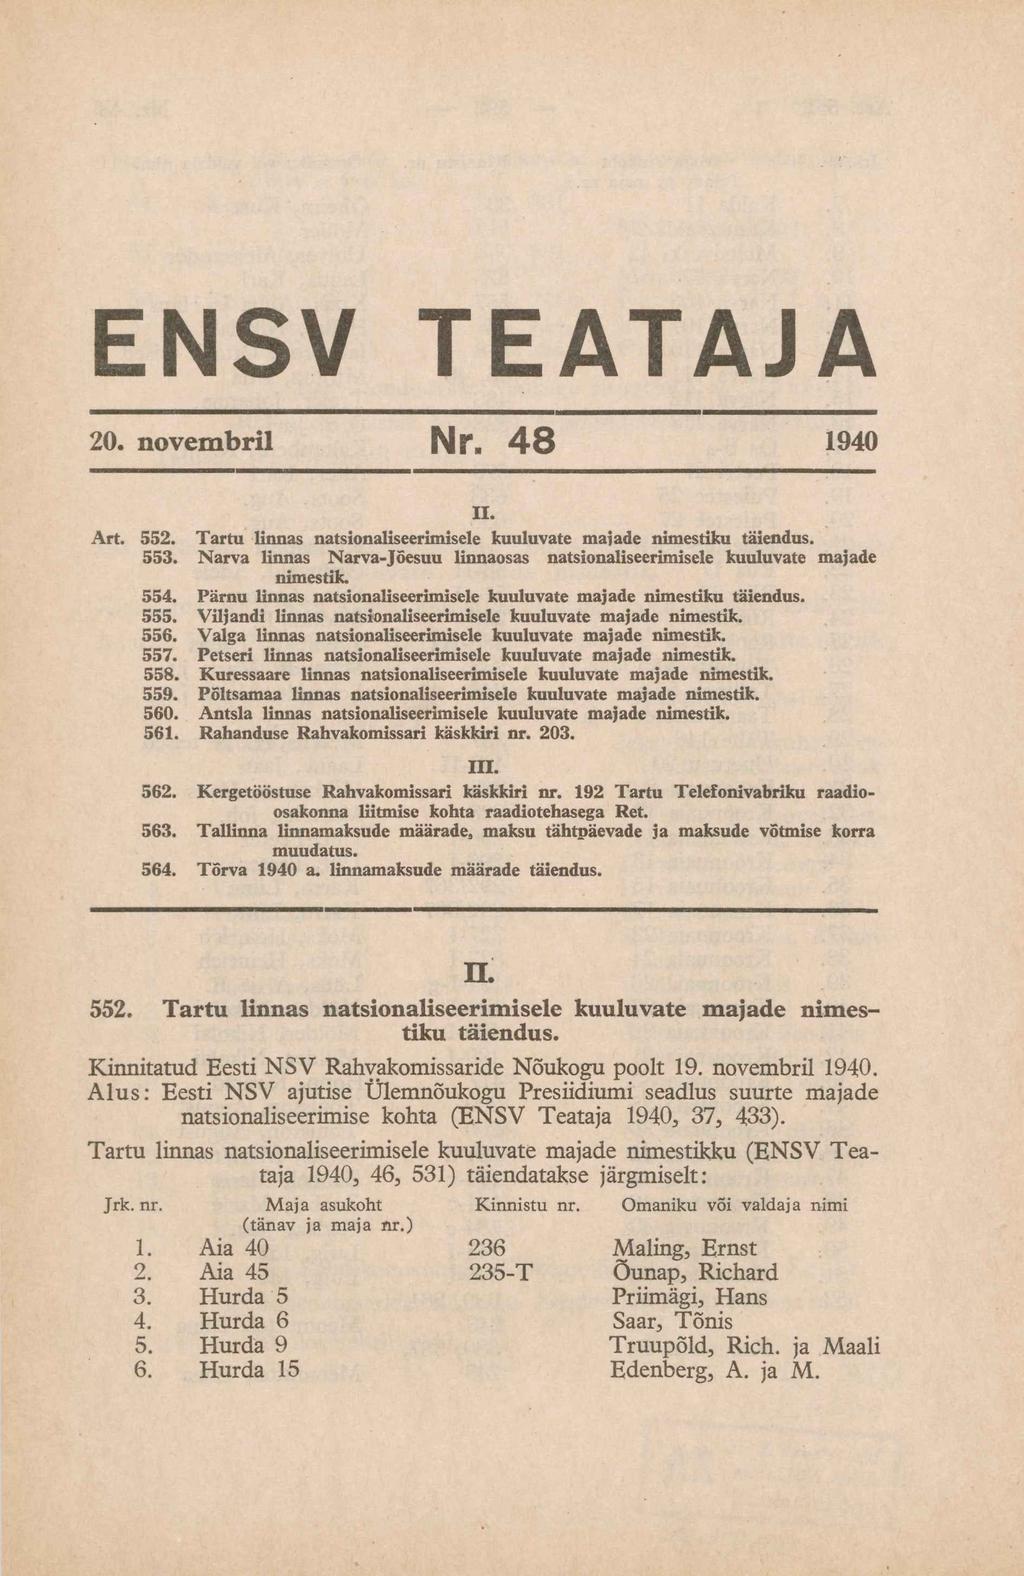 ENSV TEATAJA 20. novembril Nr«48 1940 Art. 552. 553. 554. 555. 556. 557. 558. 559. 560. 561. II. Tartu linnas natsionaliseerimisele kuuluvate maiade nimestiku täiendus.